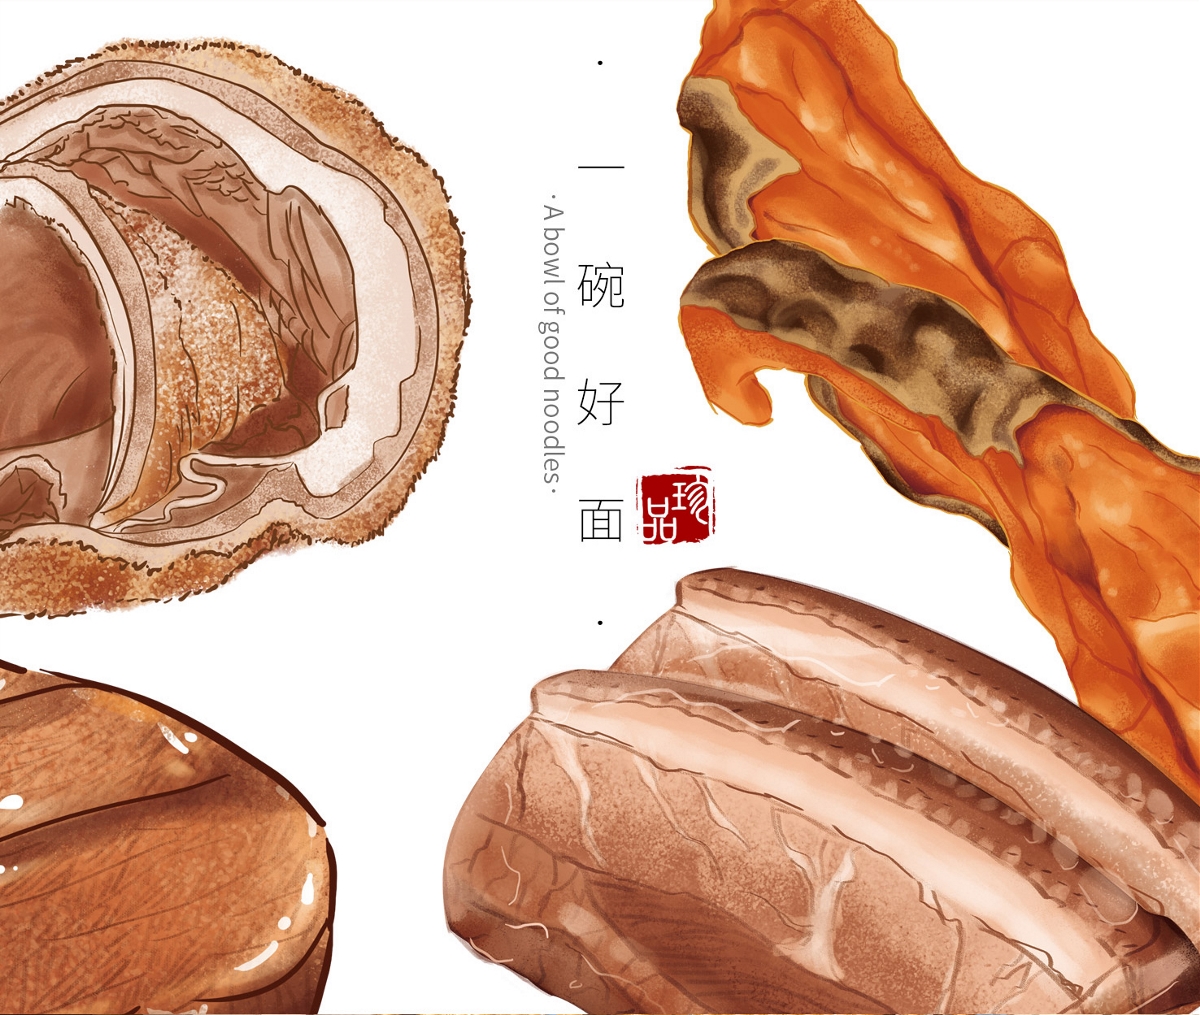 奥灶面包装设计大排面包装设计鲍鱼面包装设计方案